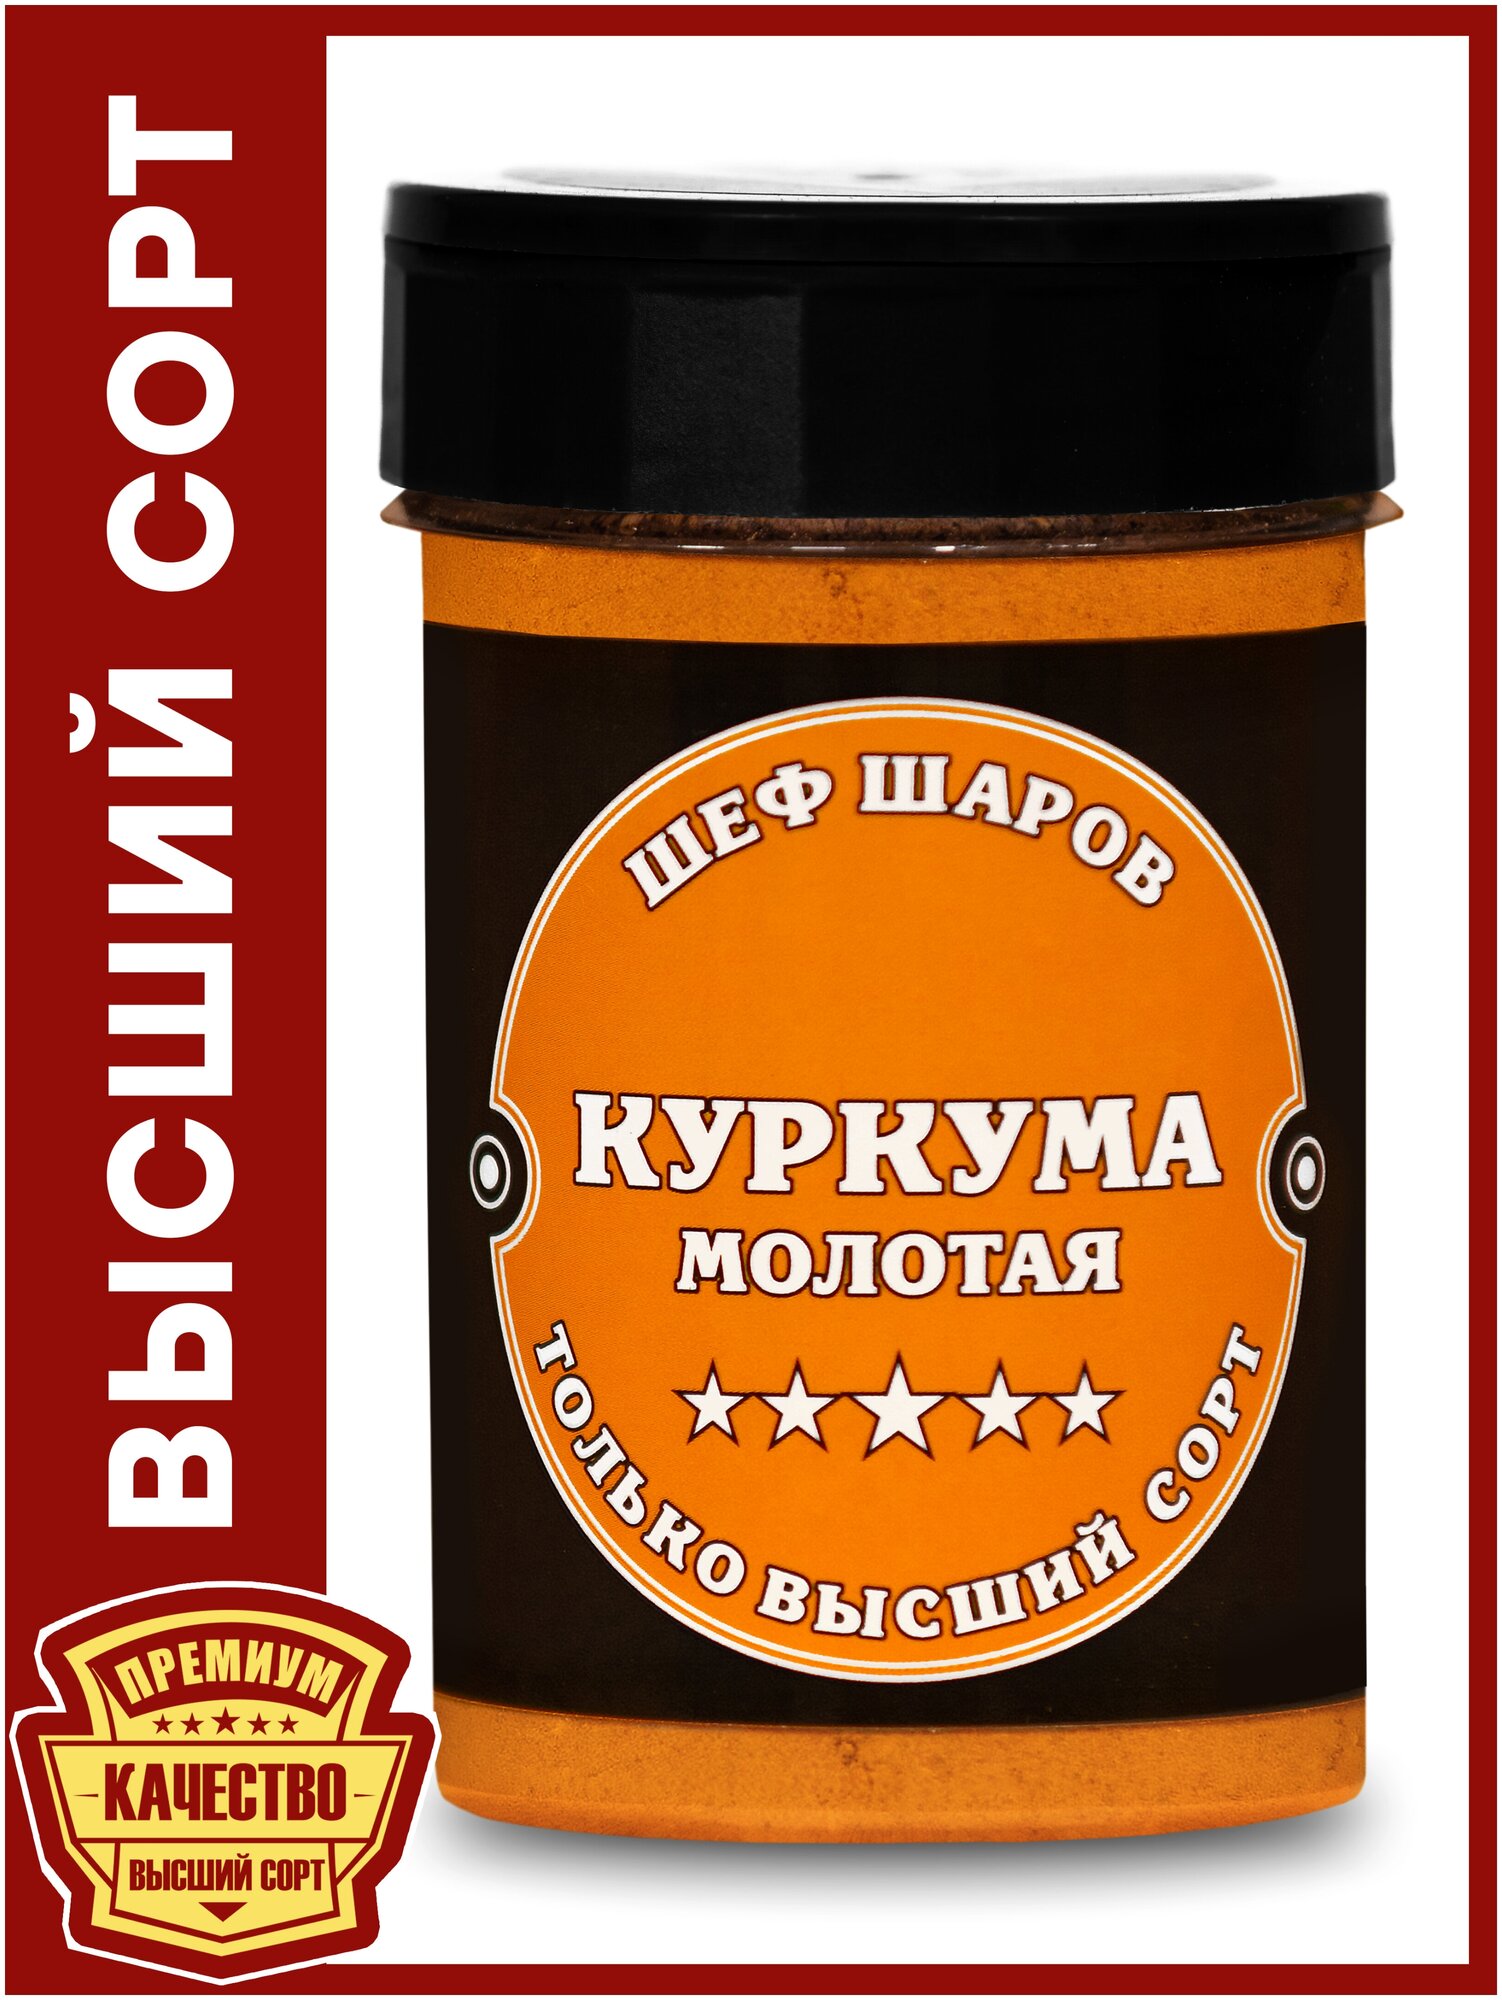 Куркума молотая ШЕФ ШАРОВ - универсальная специя и приправа для приготовления блюд, 120 гр